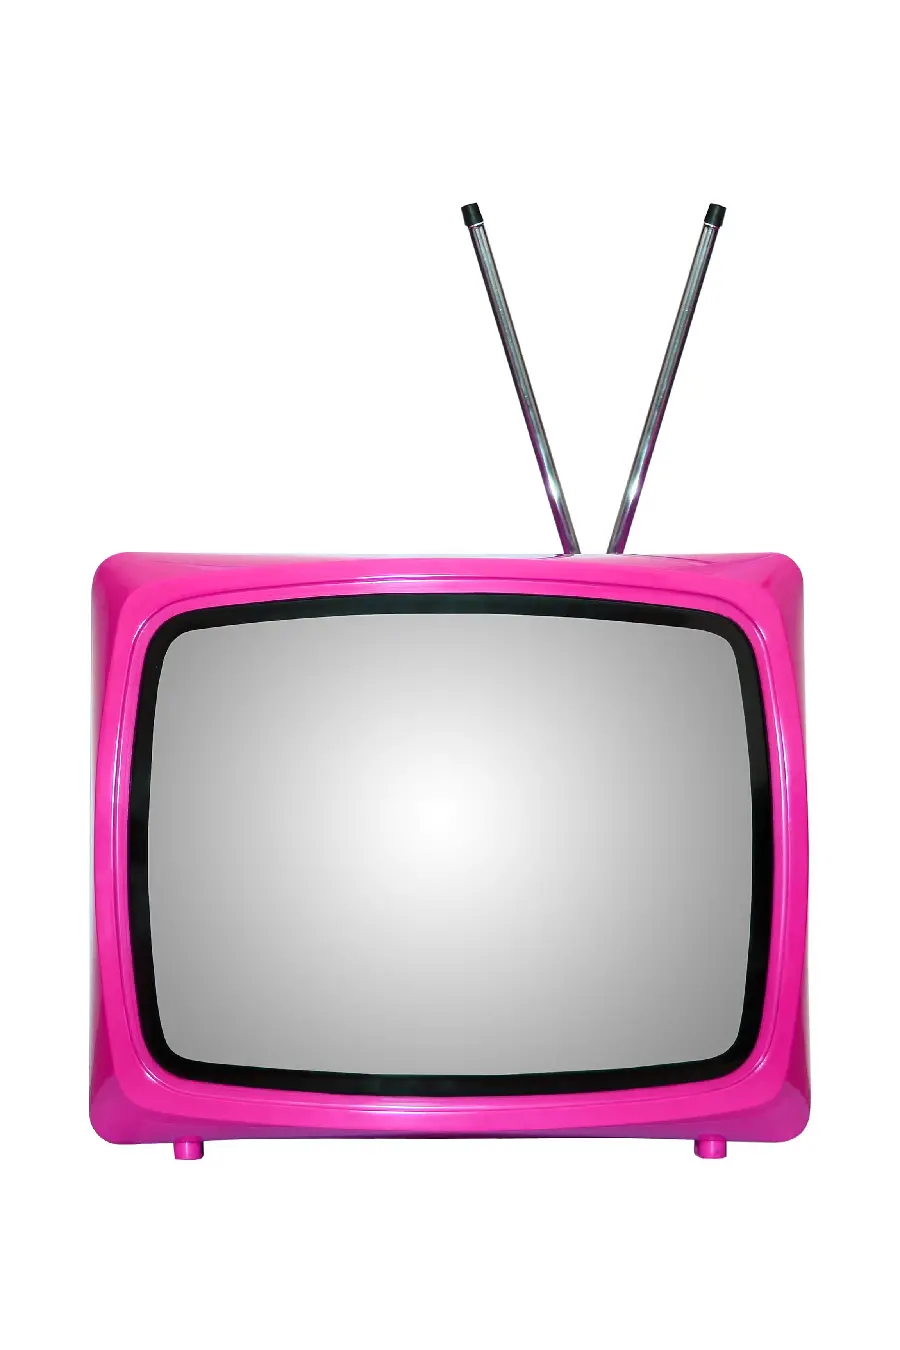 عکس وکتور تلوزیون قدیمی جالب و دیدنی به رنگ صورتی